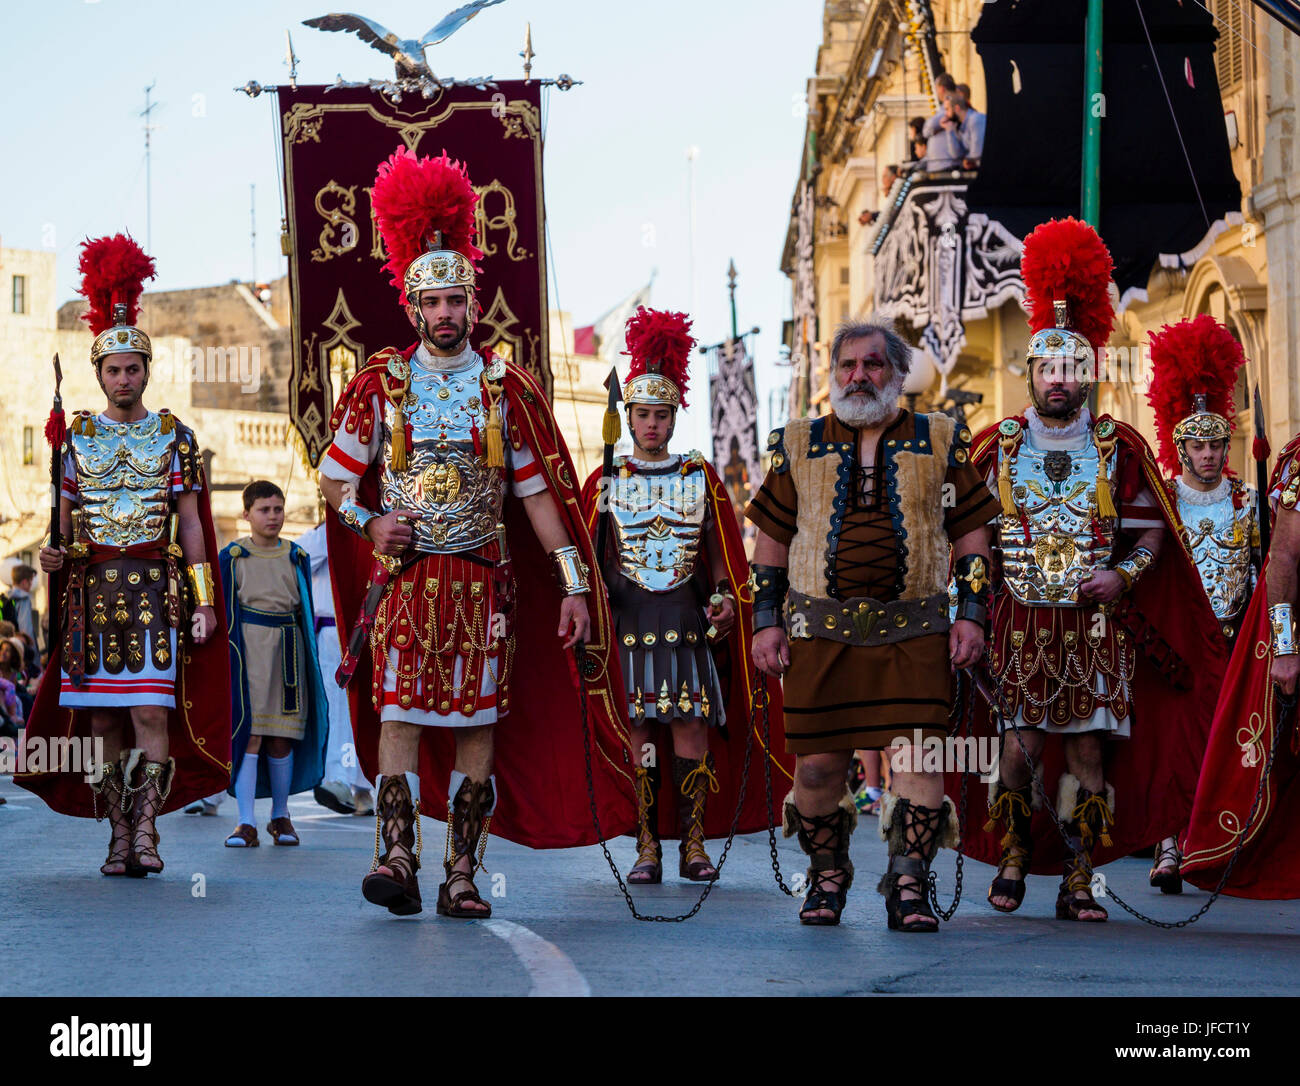 Abitanti di Zejtun / Malta aveva loro tradizionale processione del Venerdì santo di fronte alla loro chiesa, alcuni di loro vestiti come legionari romani Foto Stock